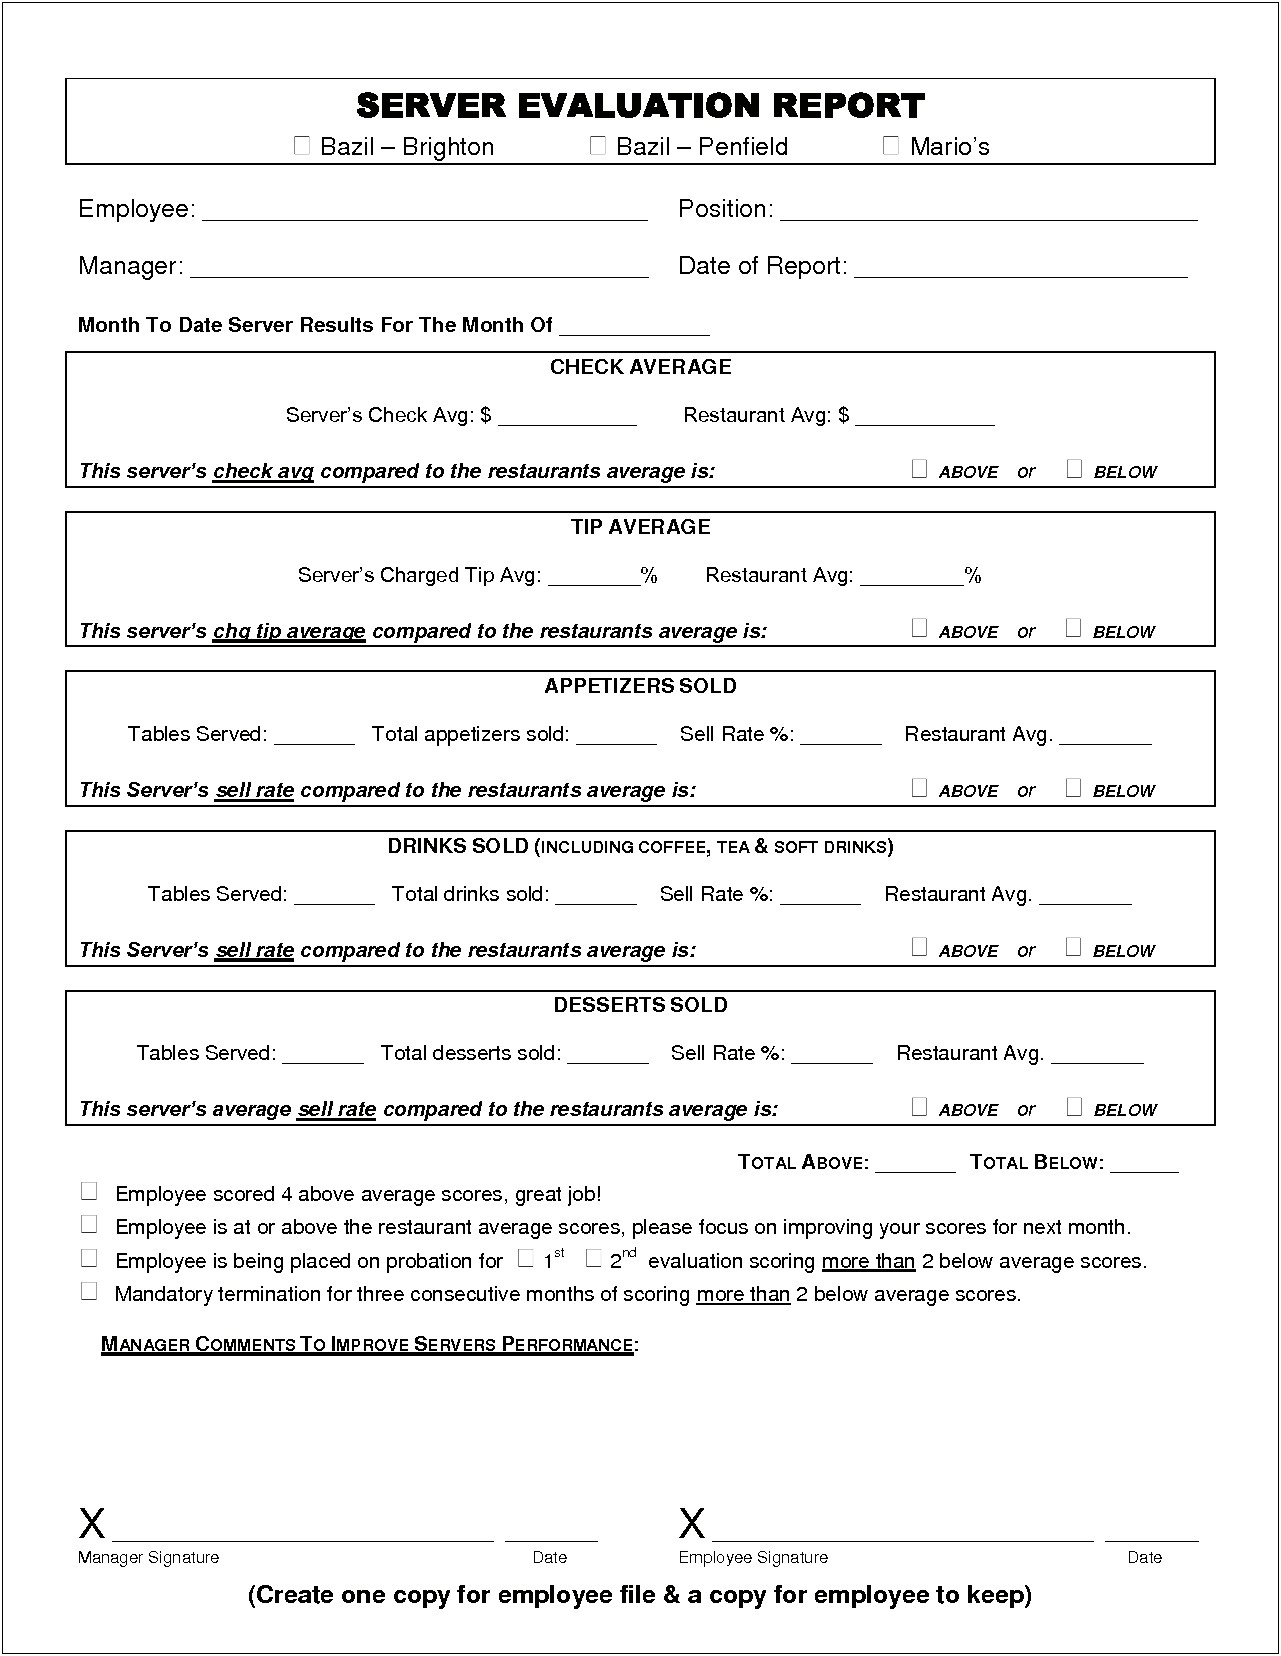 Sample Resume Restaurant Server Evaluation Form